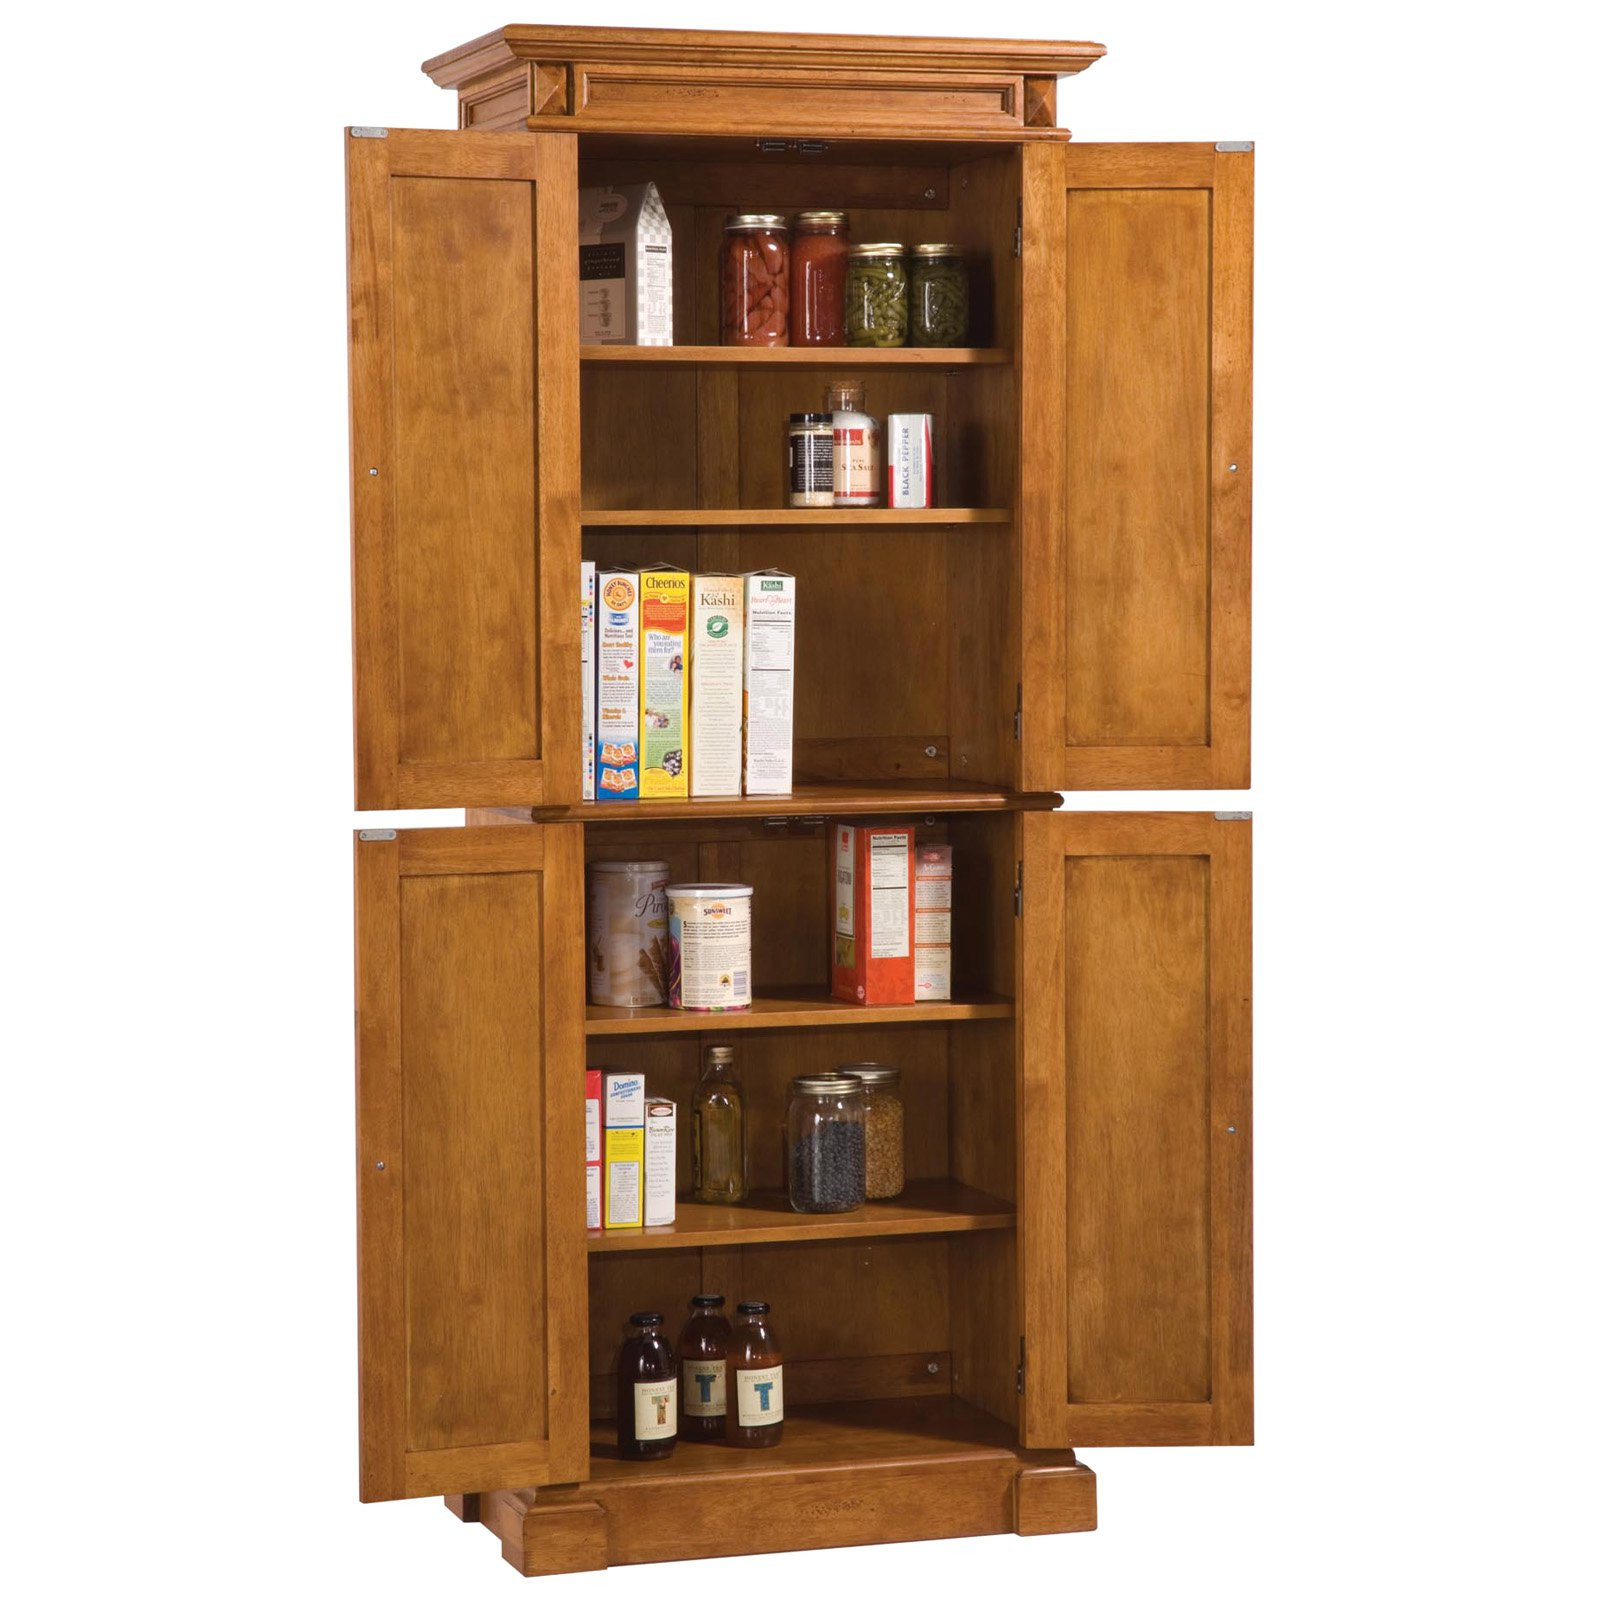 Wooden Kitchen Storage Cabinets
 Cottage Oak Solid Hardwood Pantry Cabinet Shelves Kitchen